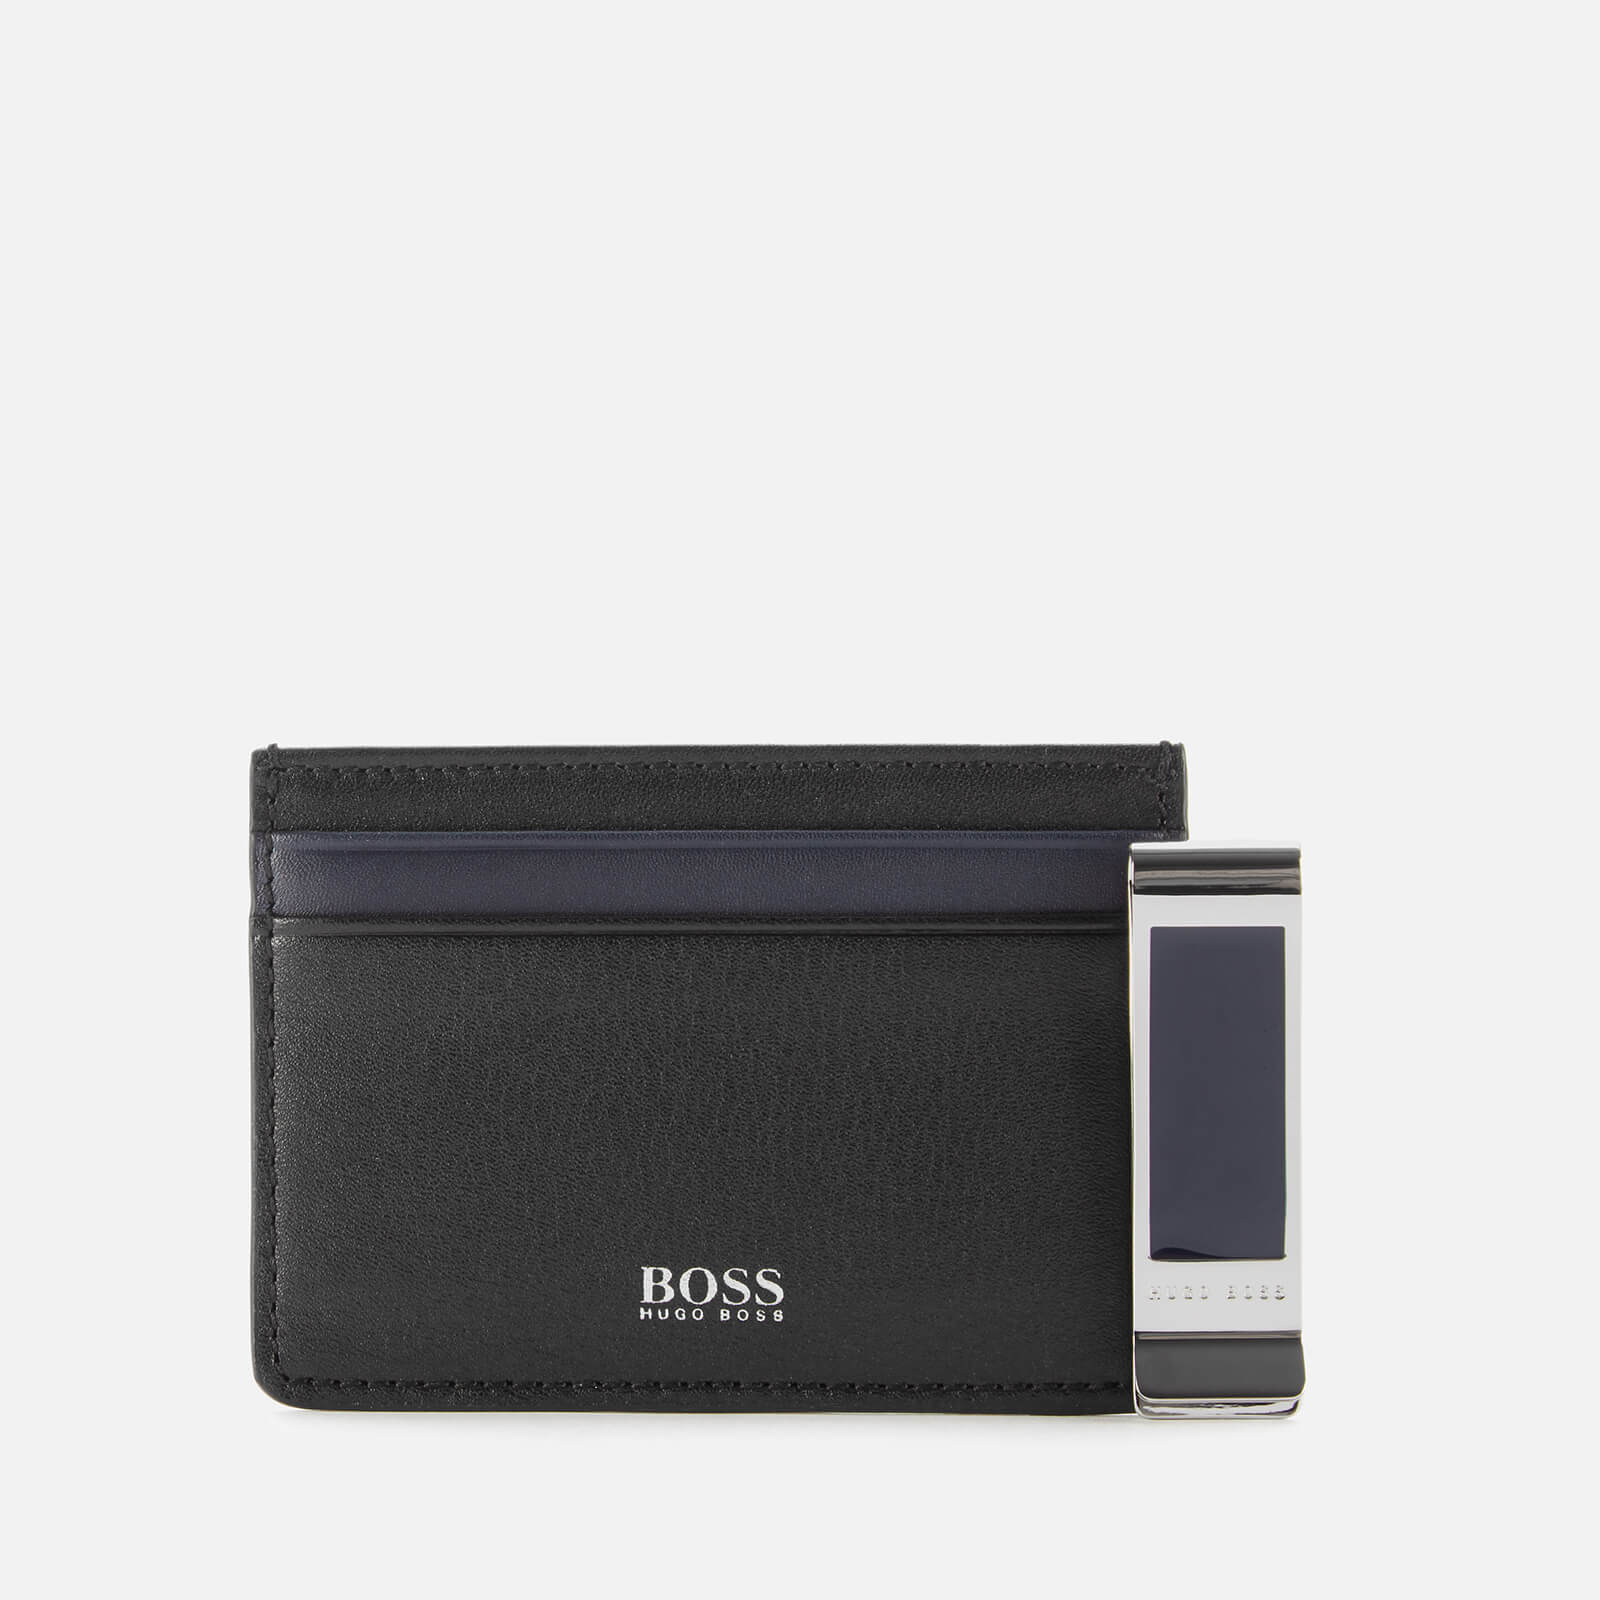 hugo boss clip wallet